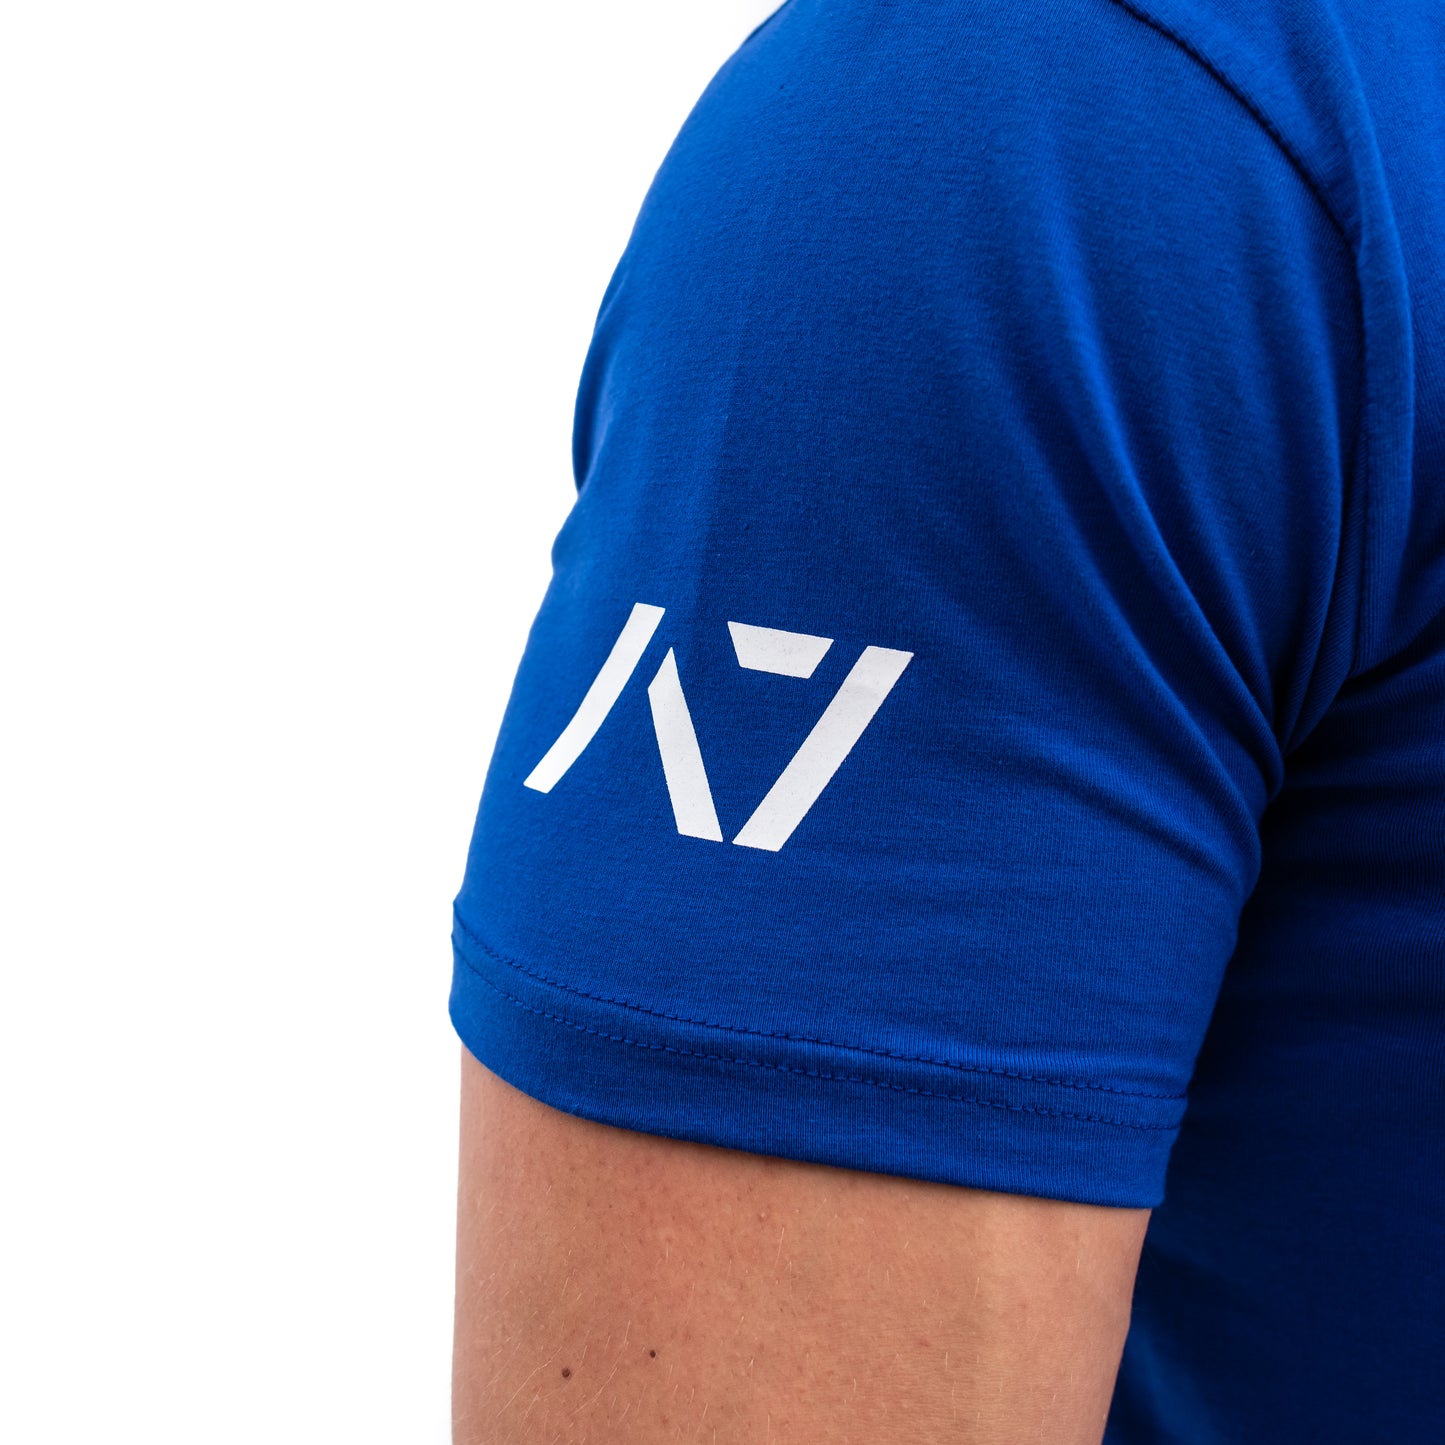 
                  
                    Demand Greatness IPF Approved Logo Men's Meet Shirt - Blue
                  
                